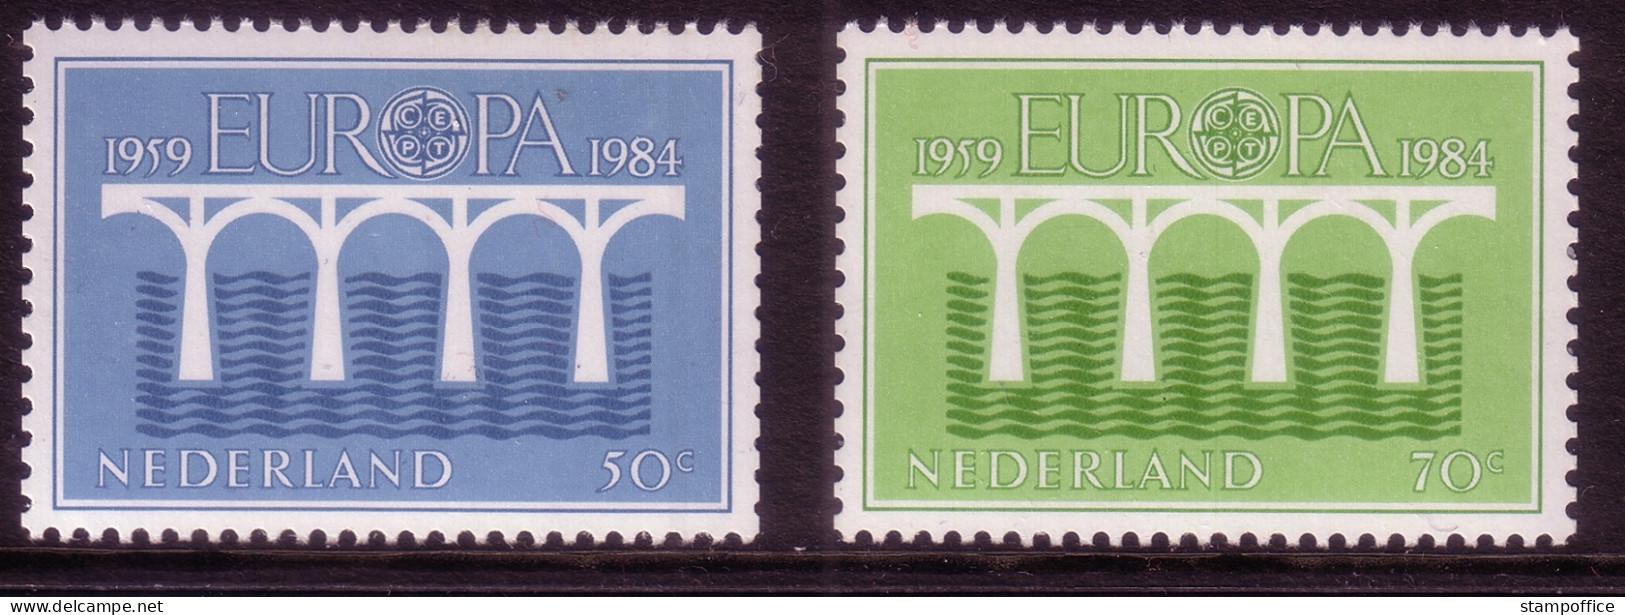 EUROPA CEPT JAHRGANG 1984 POSTFRISCH(MINT) MIT NIEDERLANDE C UND 4 BLÖCKEN BRÜCKE - 1984